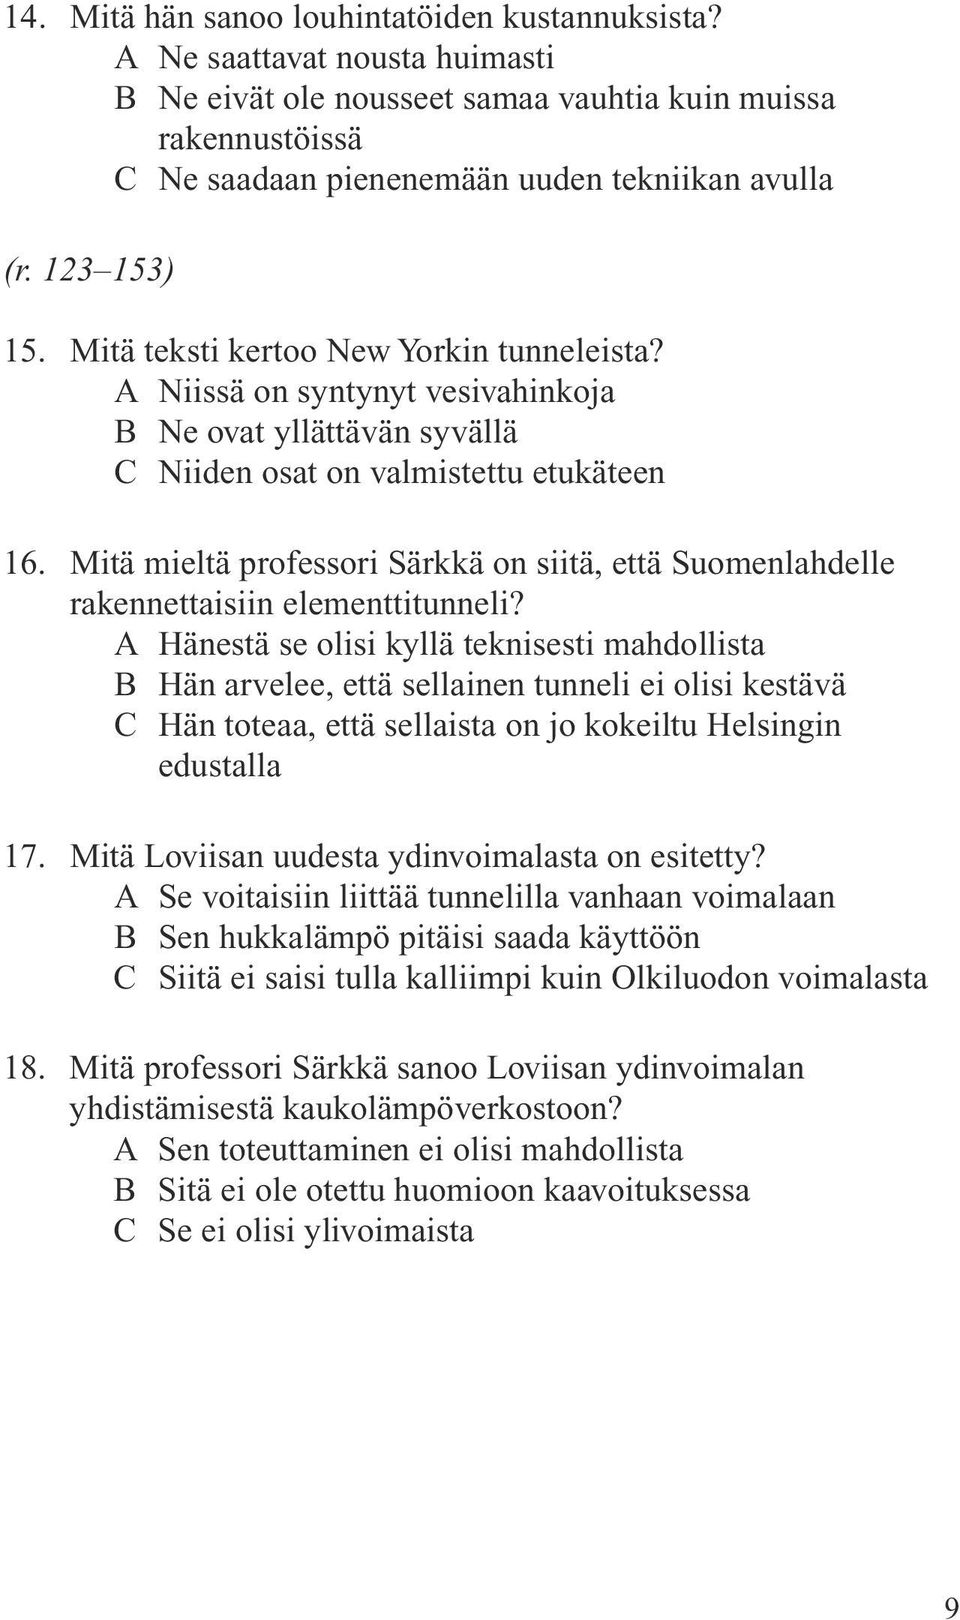 Mitä mieltä professori Särkkä on siitä, että Suomenlahdelle rakennettaisiin elementtitunneli?